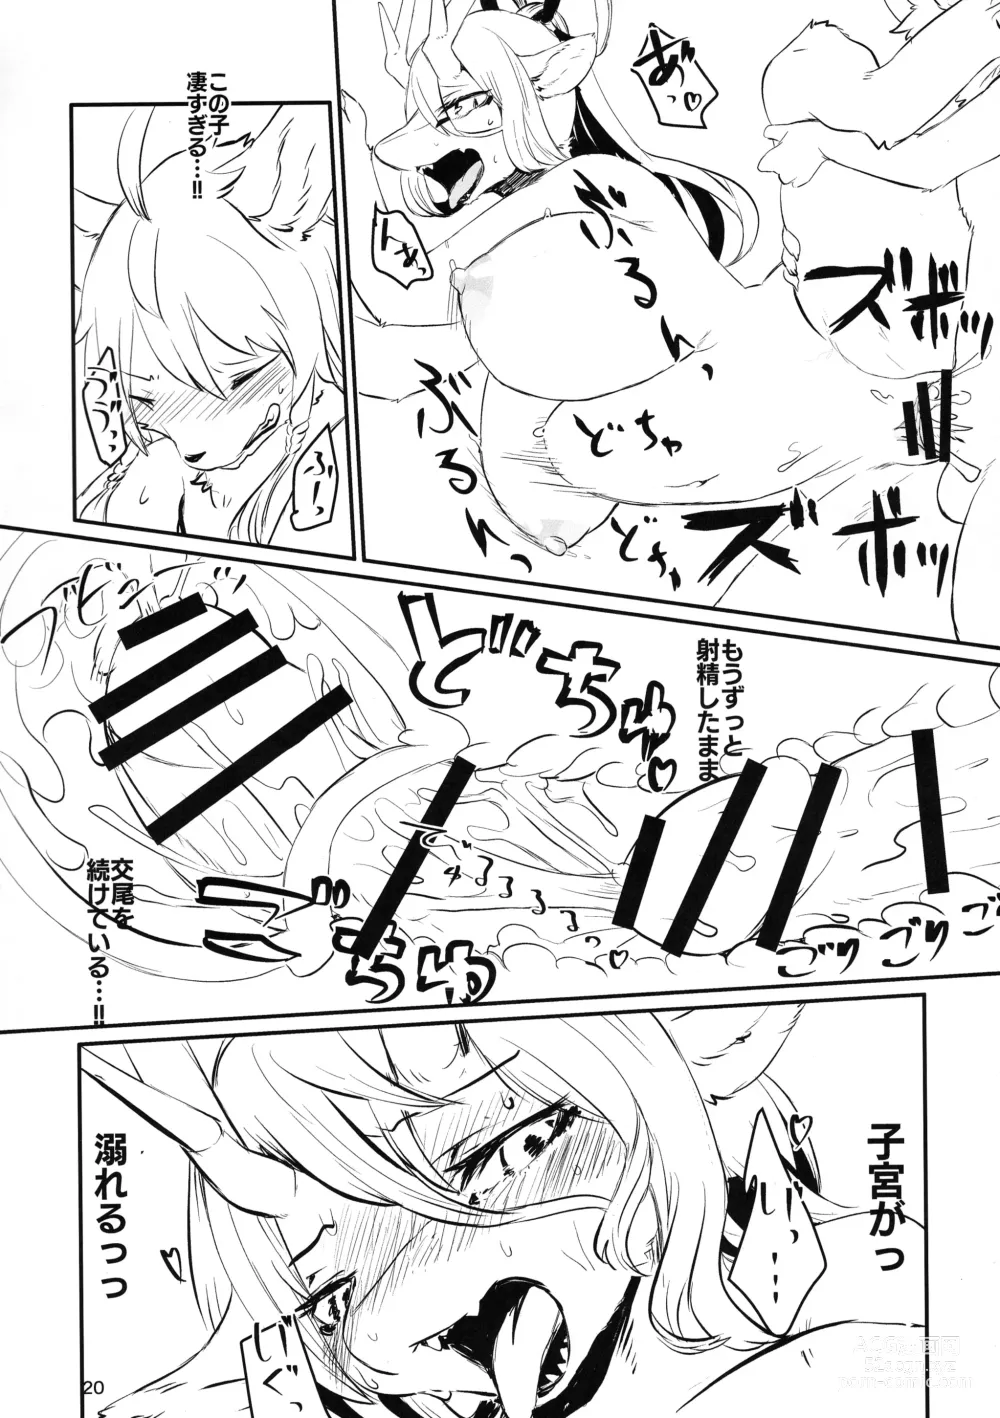 Page 20 of doujinshi Kyosei Yukoku ni Kaoru